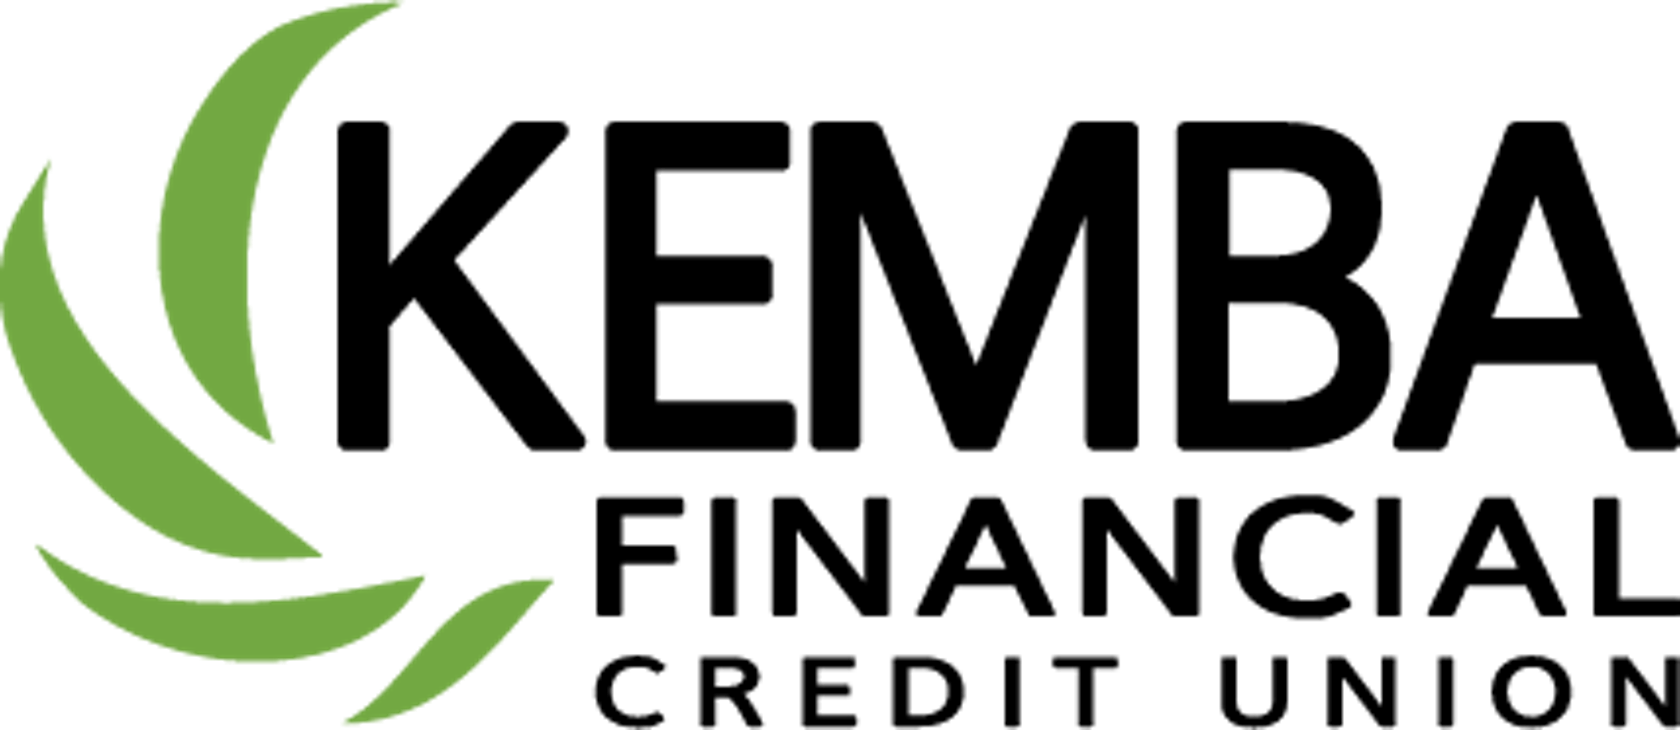 Kemba Financial Credit Union Architizer